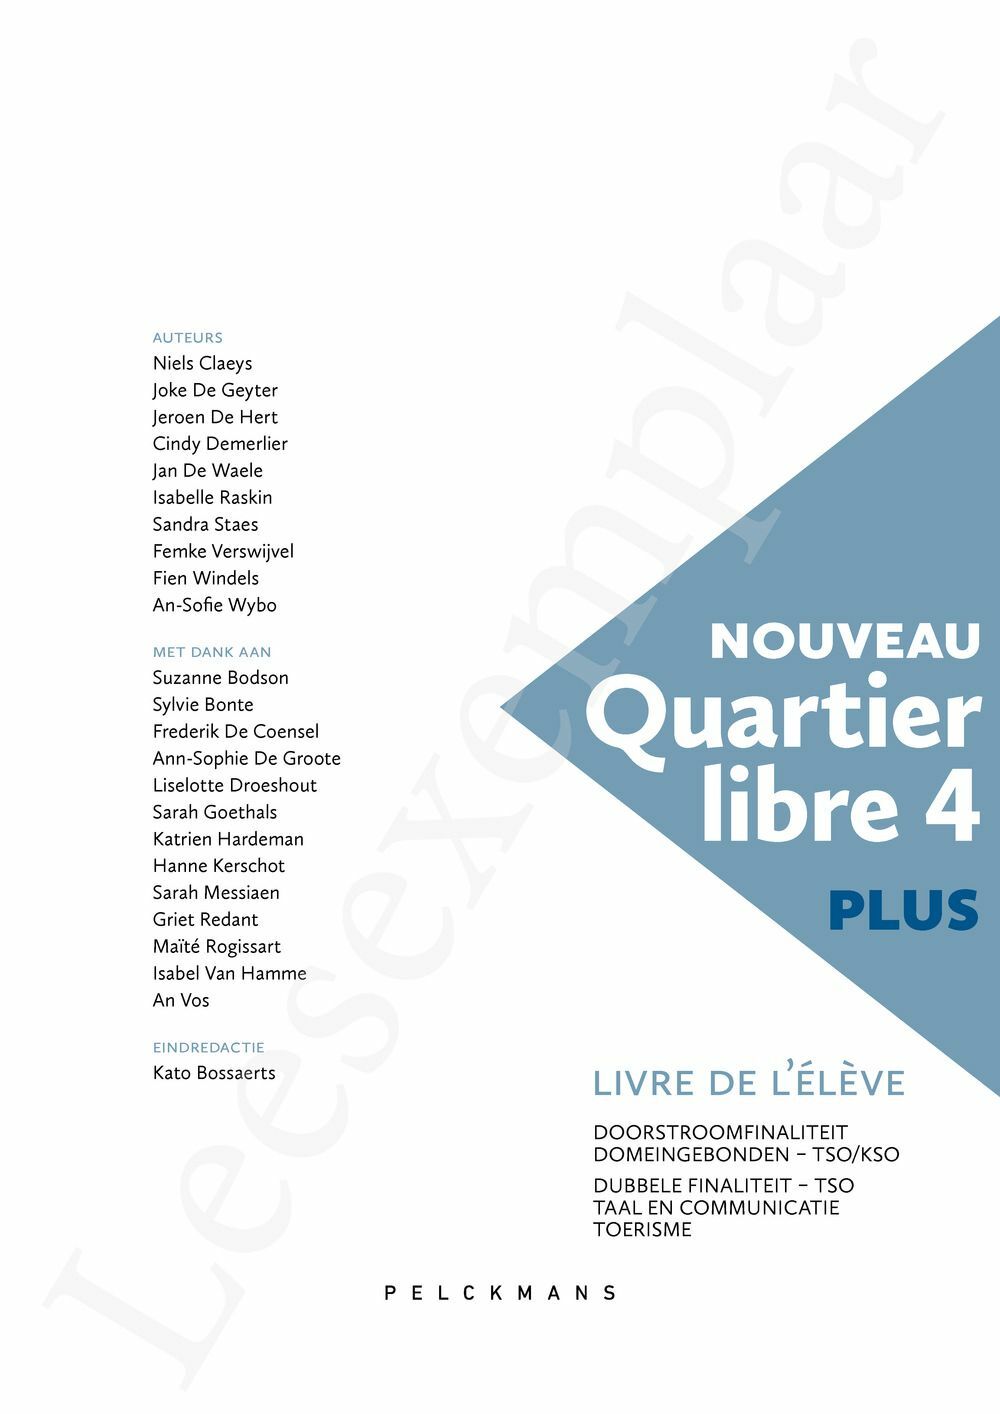 Preview: Nouveau Quartier libre 4 Plus Livre de l'élève (editie 2024) (incl. Éclats, Pelckmans Portaal)